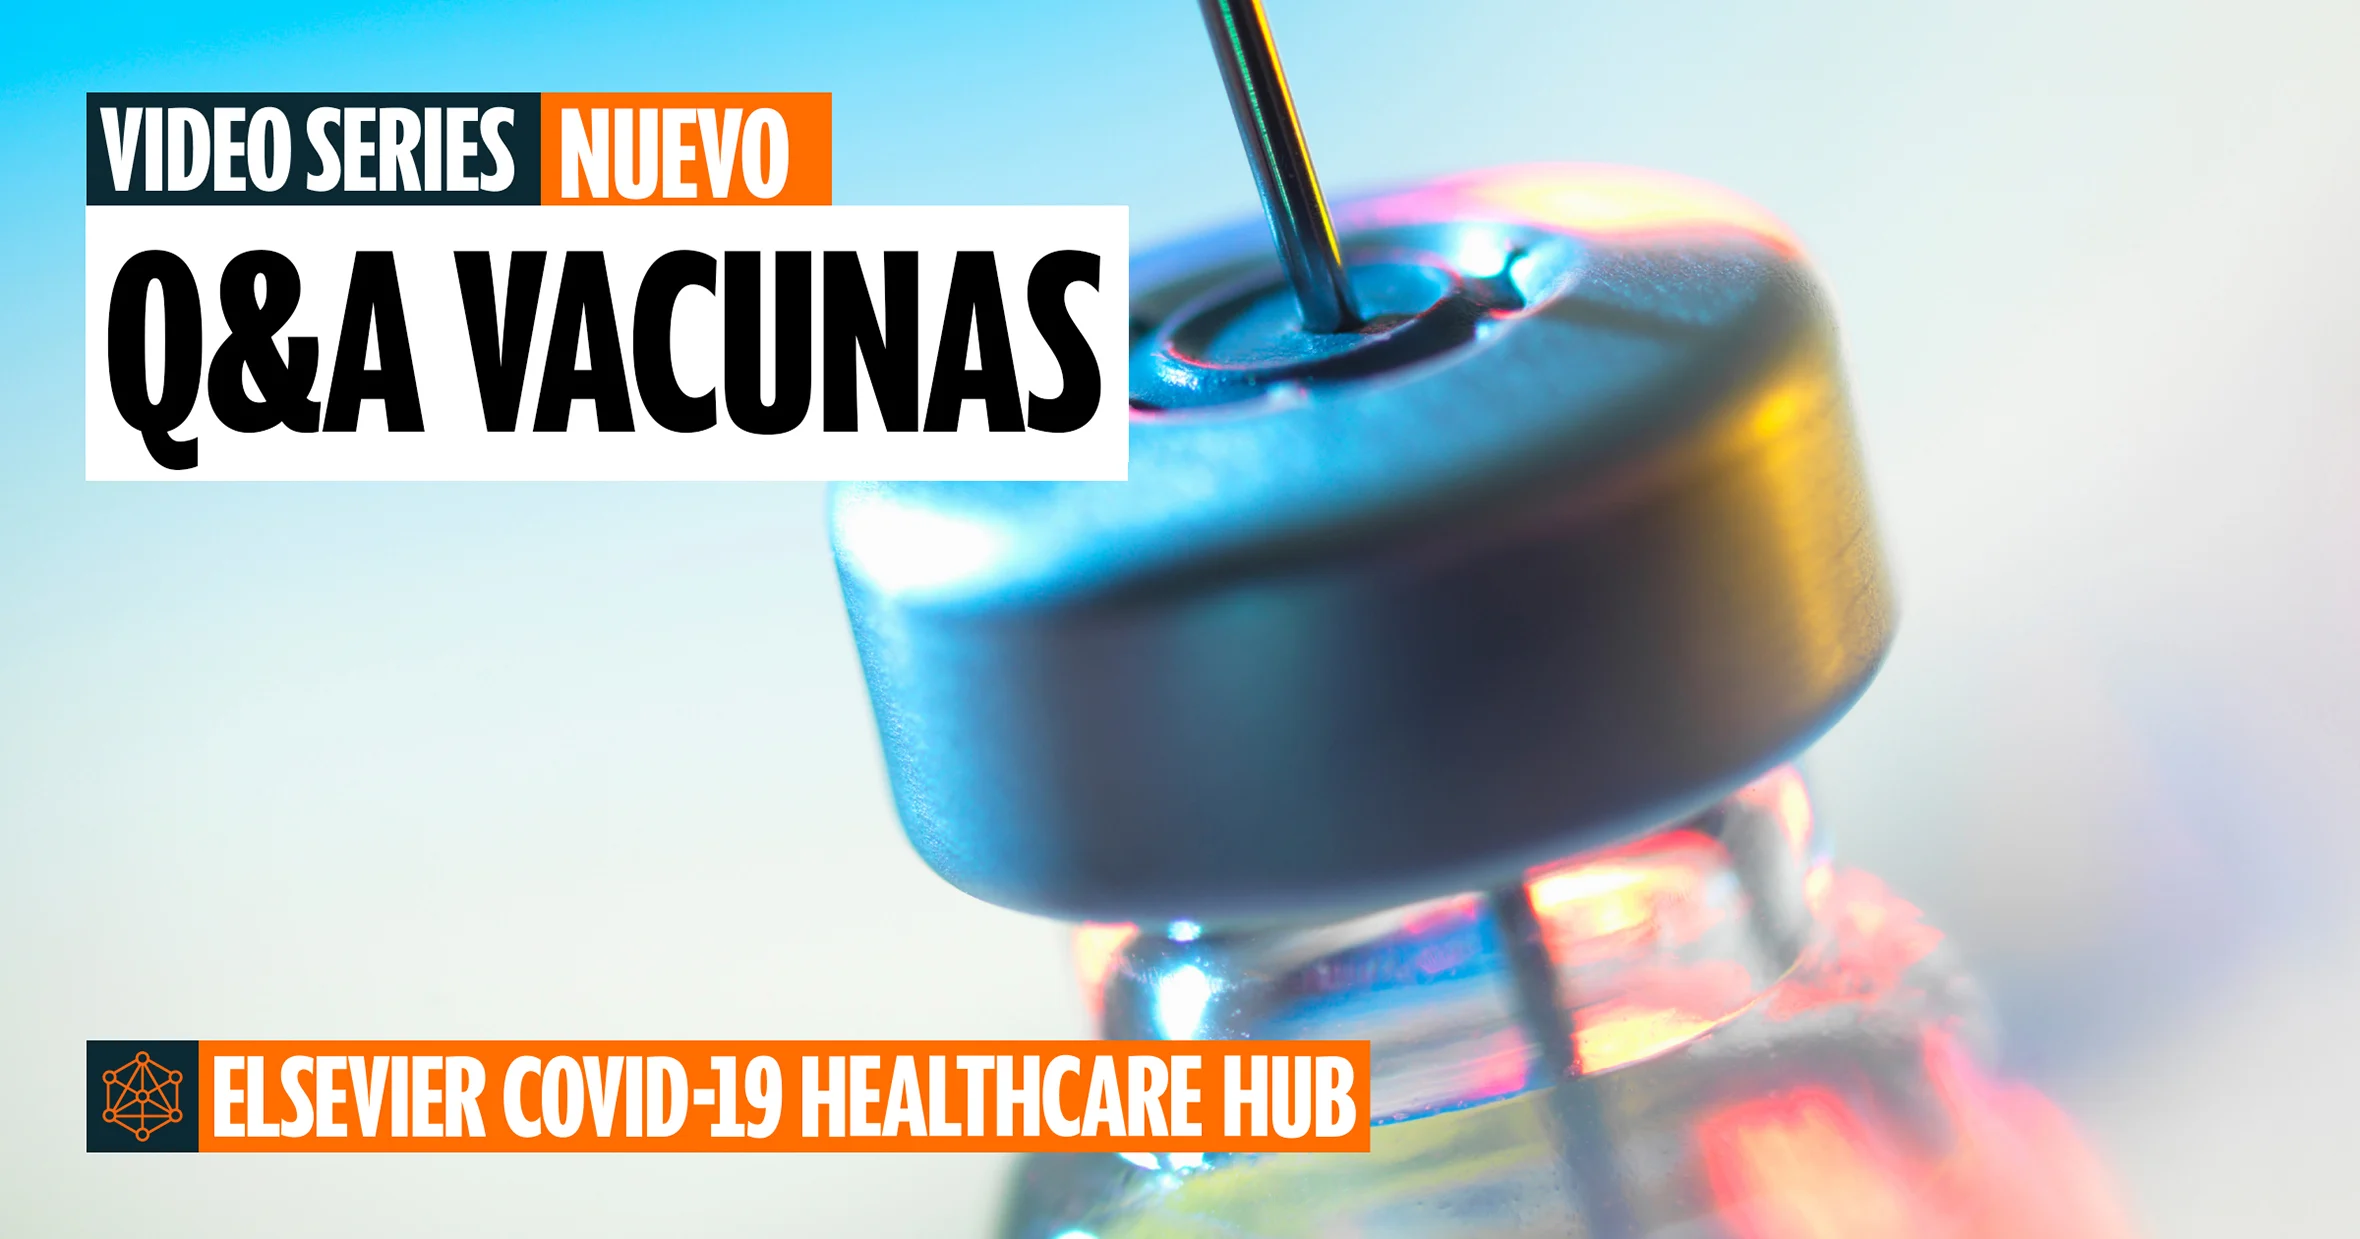 Video Series - Nuevo - Q&A Vacunas